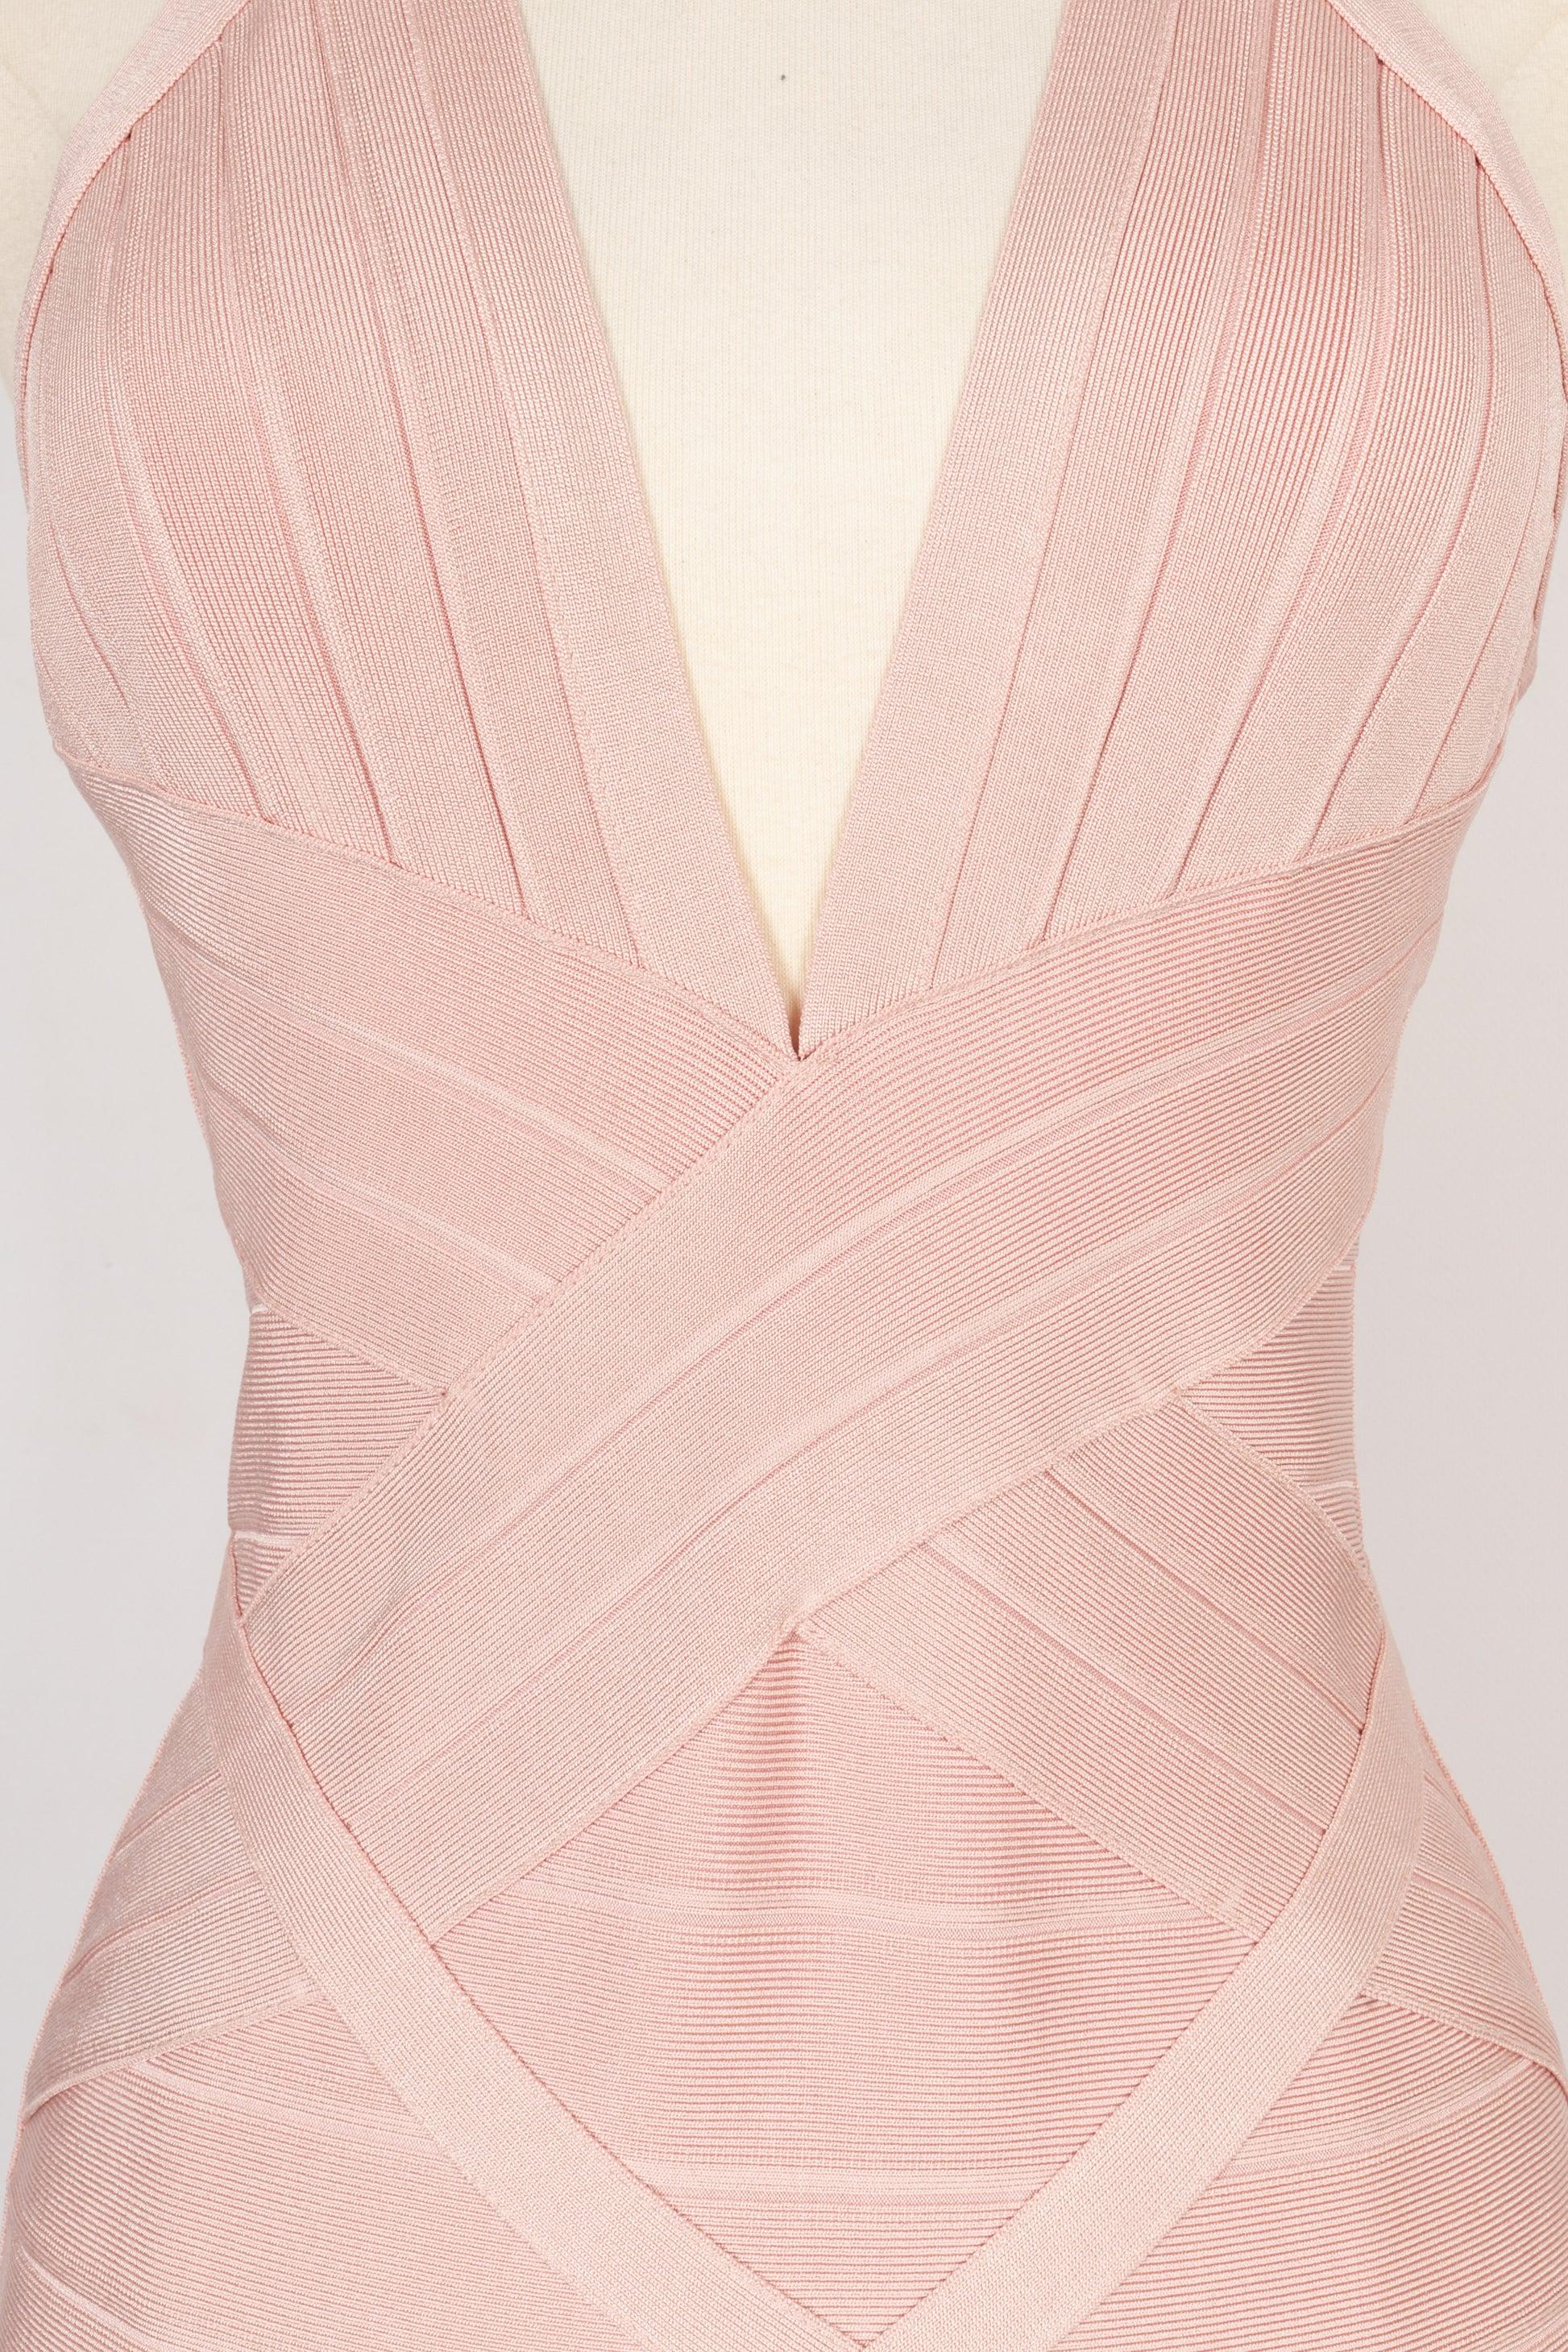 Hervé Léger Elasticated Powder Pink Dress For Sale 1